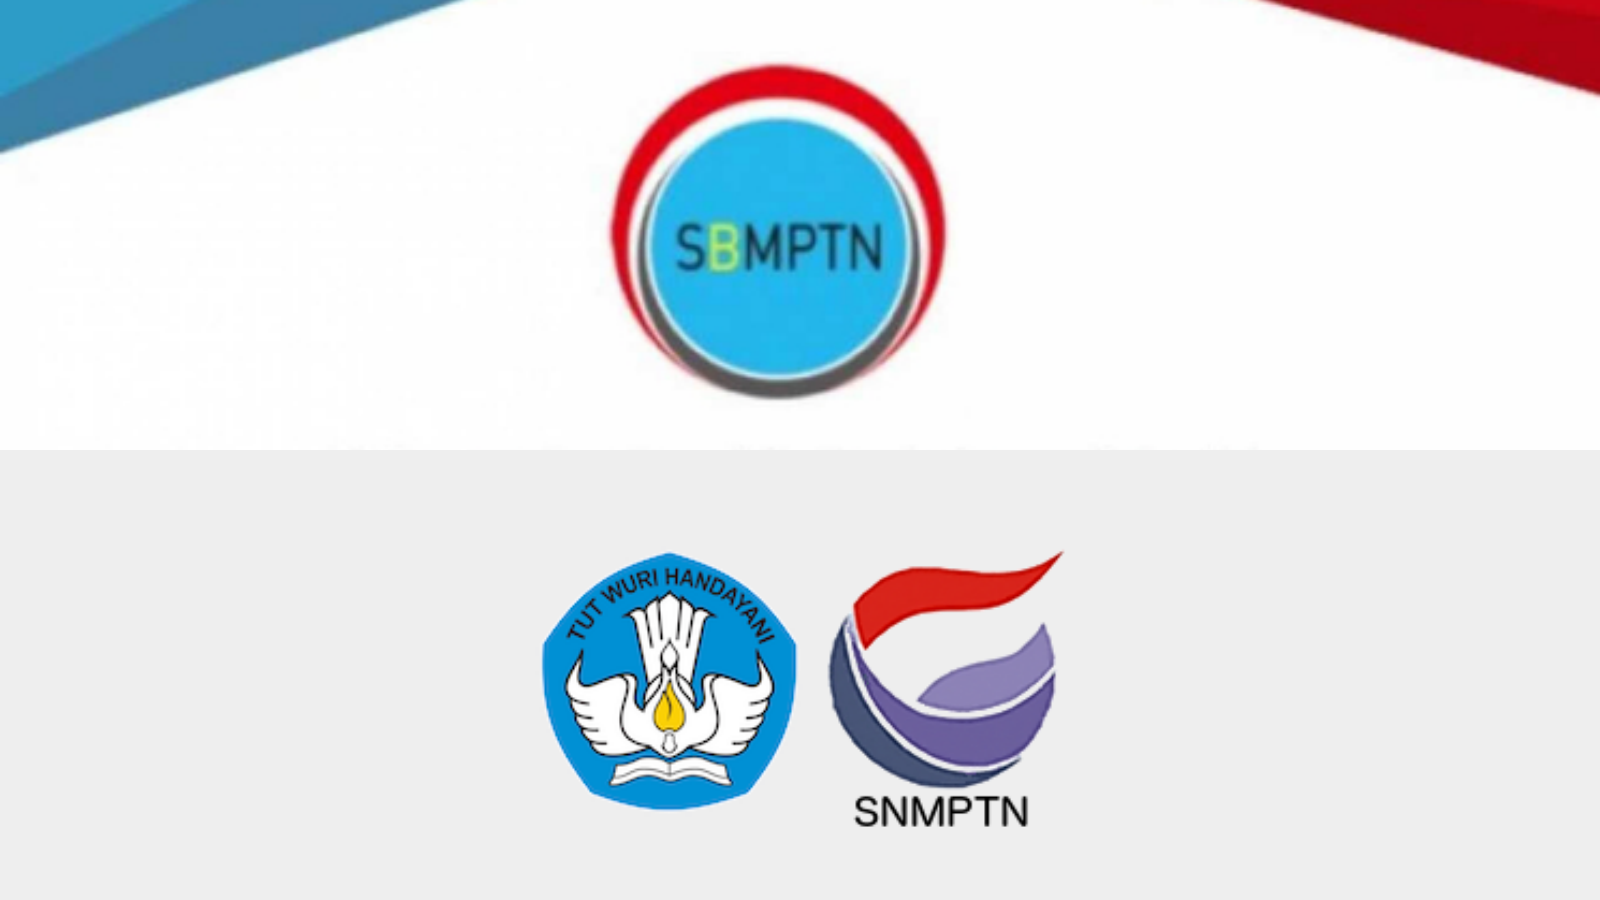 Buat Lulusan Baru, Ini 3 Jalur Masuk Universitas Negeri: SNMPTN, SBMPTN dan Seleksi Mandiri, Simak Disini Ya!